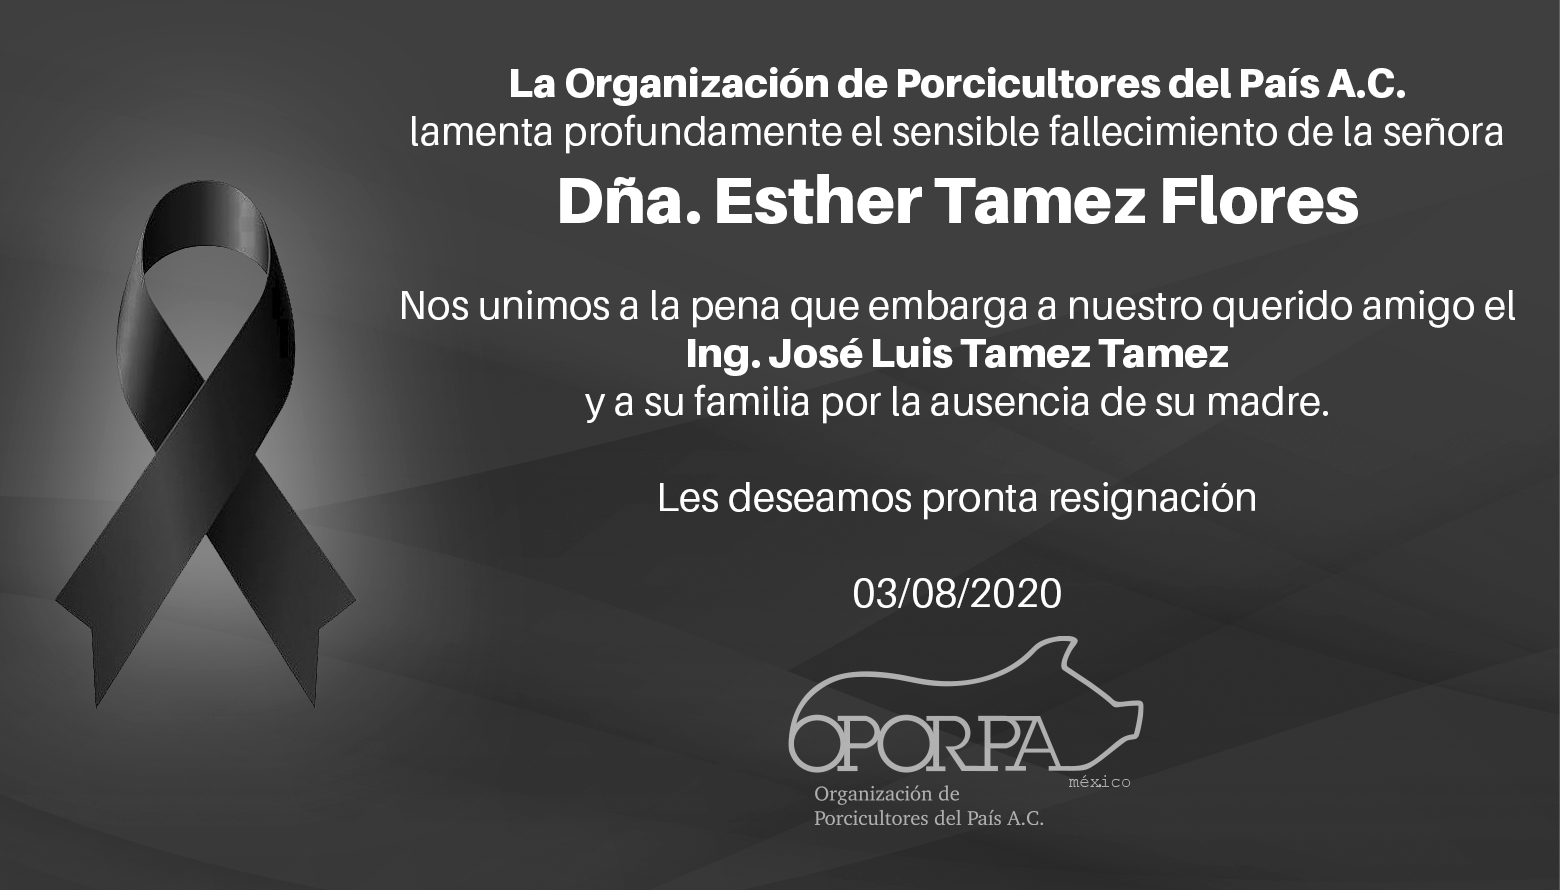 En Oporpa lamentamos el sensible fallecimiento de Dña. Esther Tamez Flores